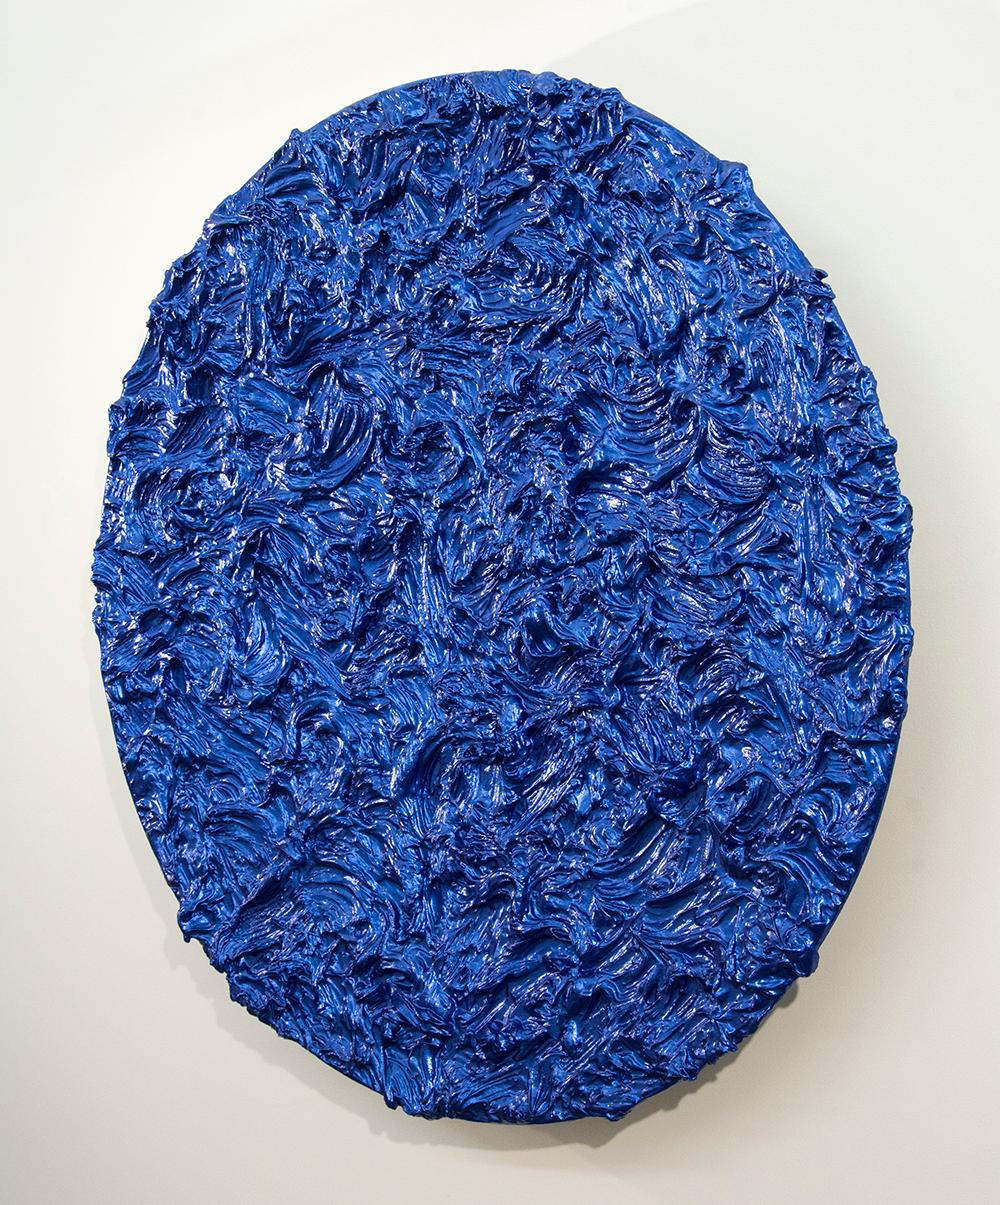 Tondo Storm Surge Cobalt - brillant, bleu, empâtement, abstrait, acrylique sur aluminium - Painting de Shayne Dark